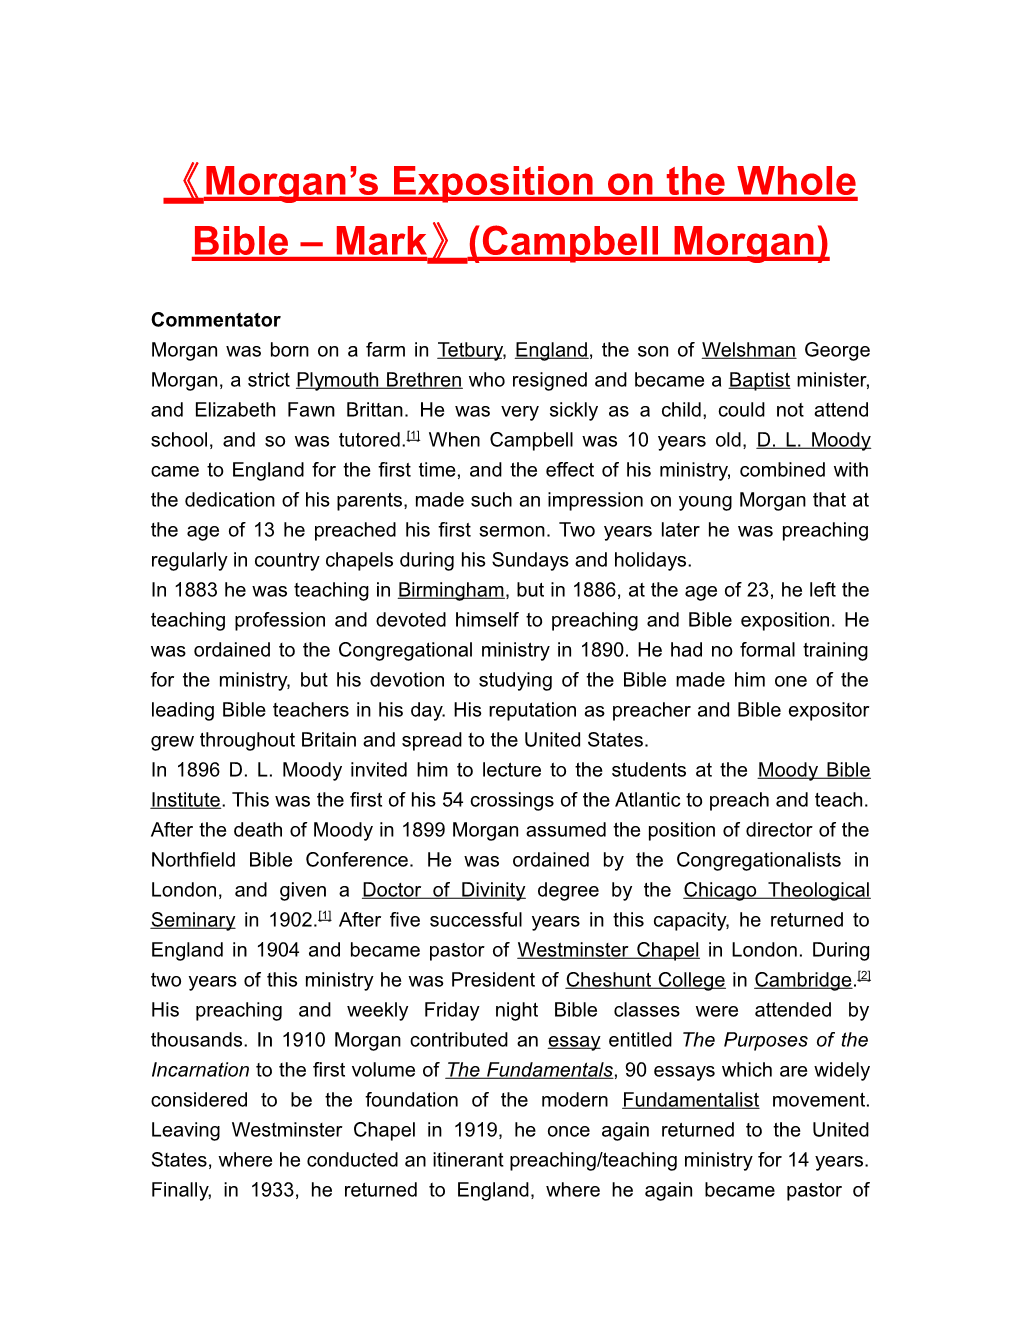 Morgan Sexposition on the Wholebible Mark (Campbell Morgan)